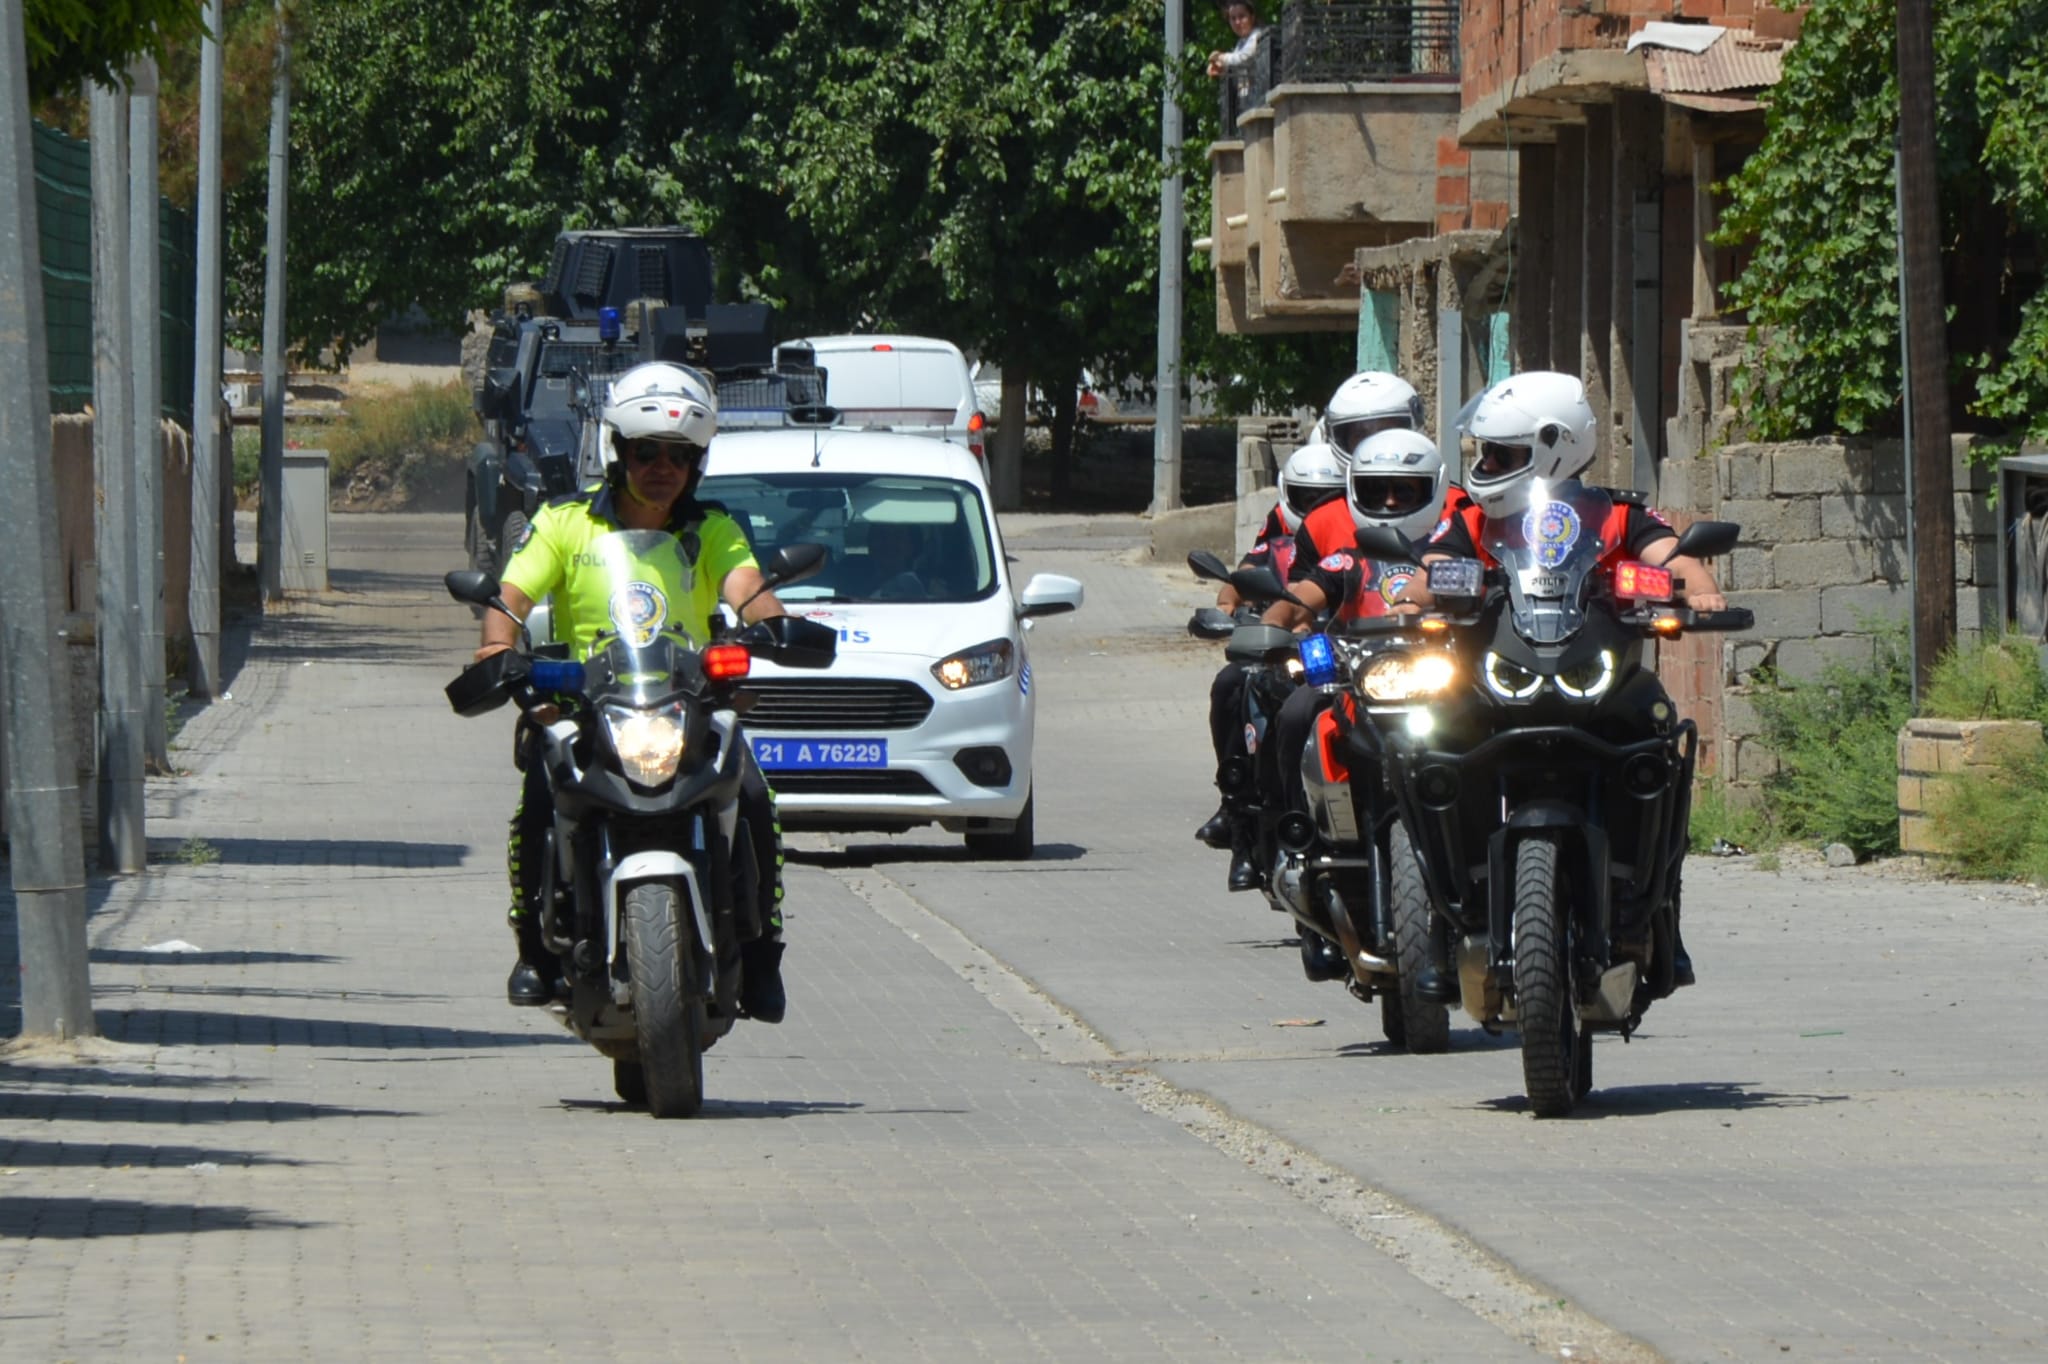 Bismil İlçe Emniyet Müdürlüğü bünyesinde kurulan Motosikletli Polislik Büro Amirliği düzenlenen törenle göreve başladı. 